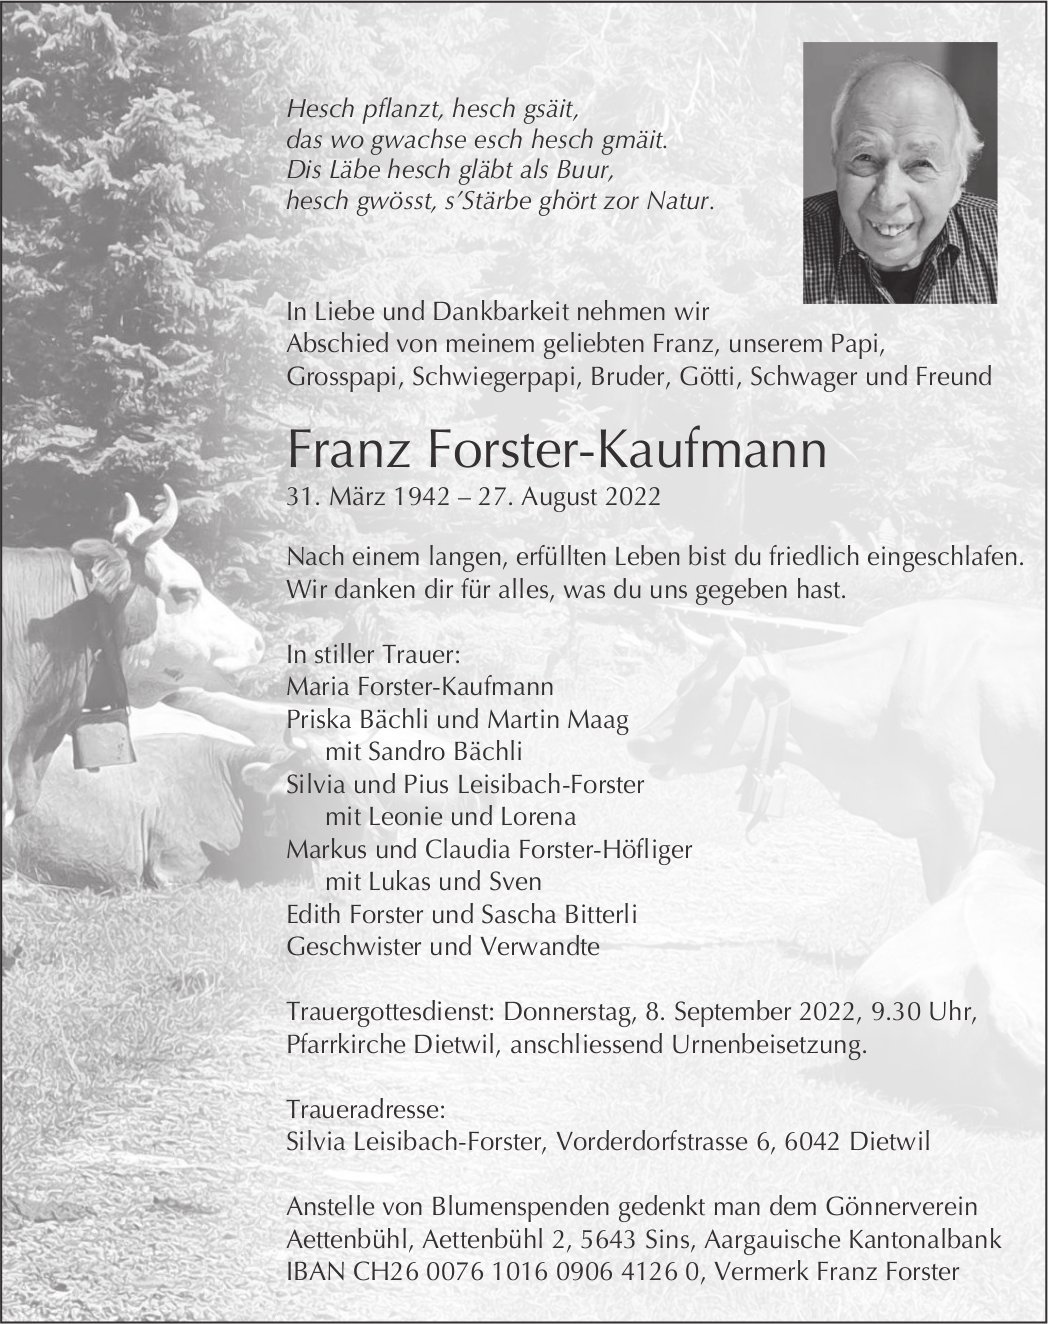 Forster-Kaufmann Franz, August 2022 / TA